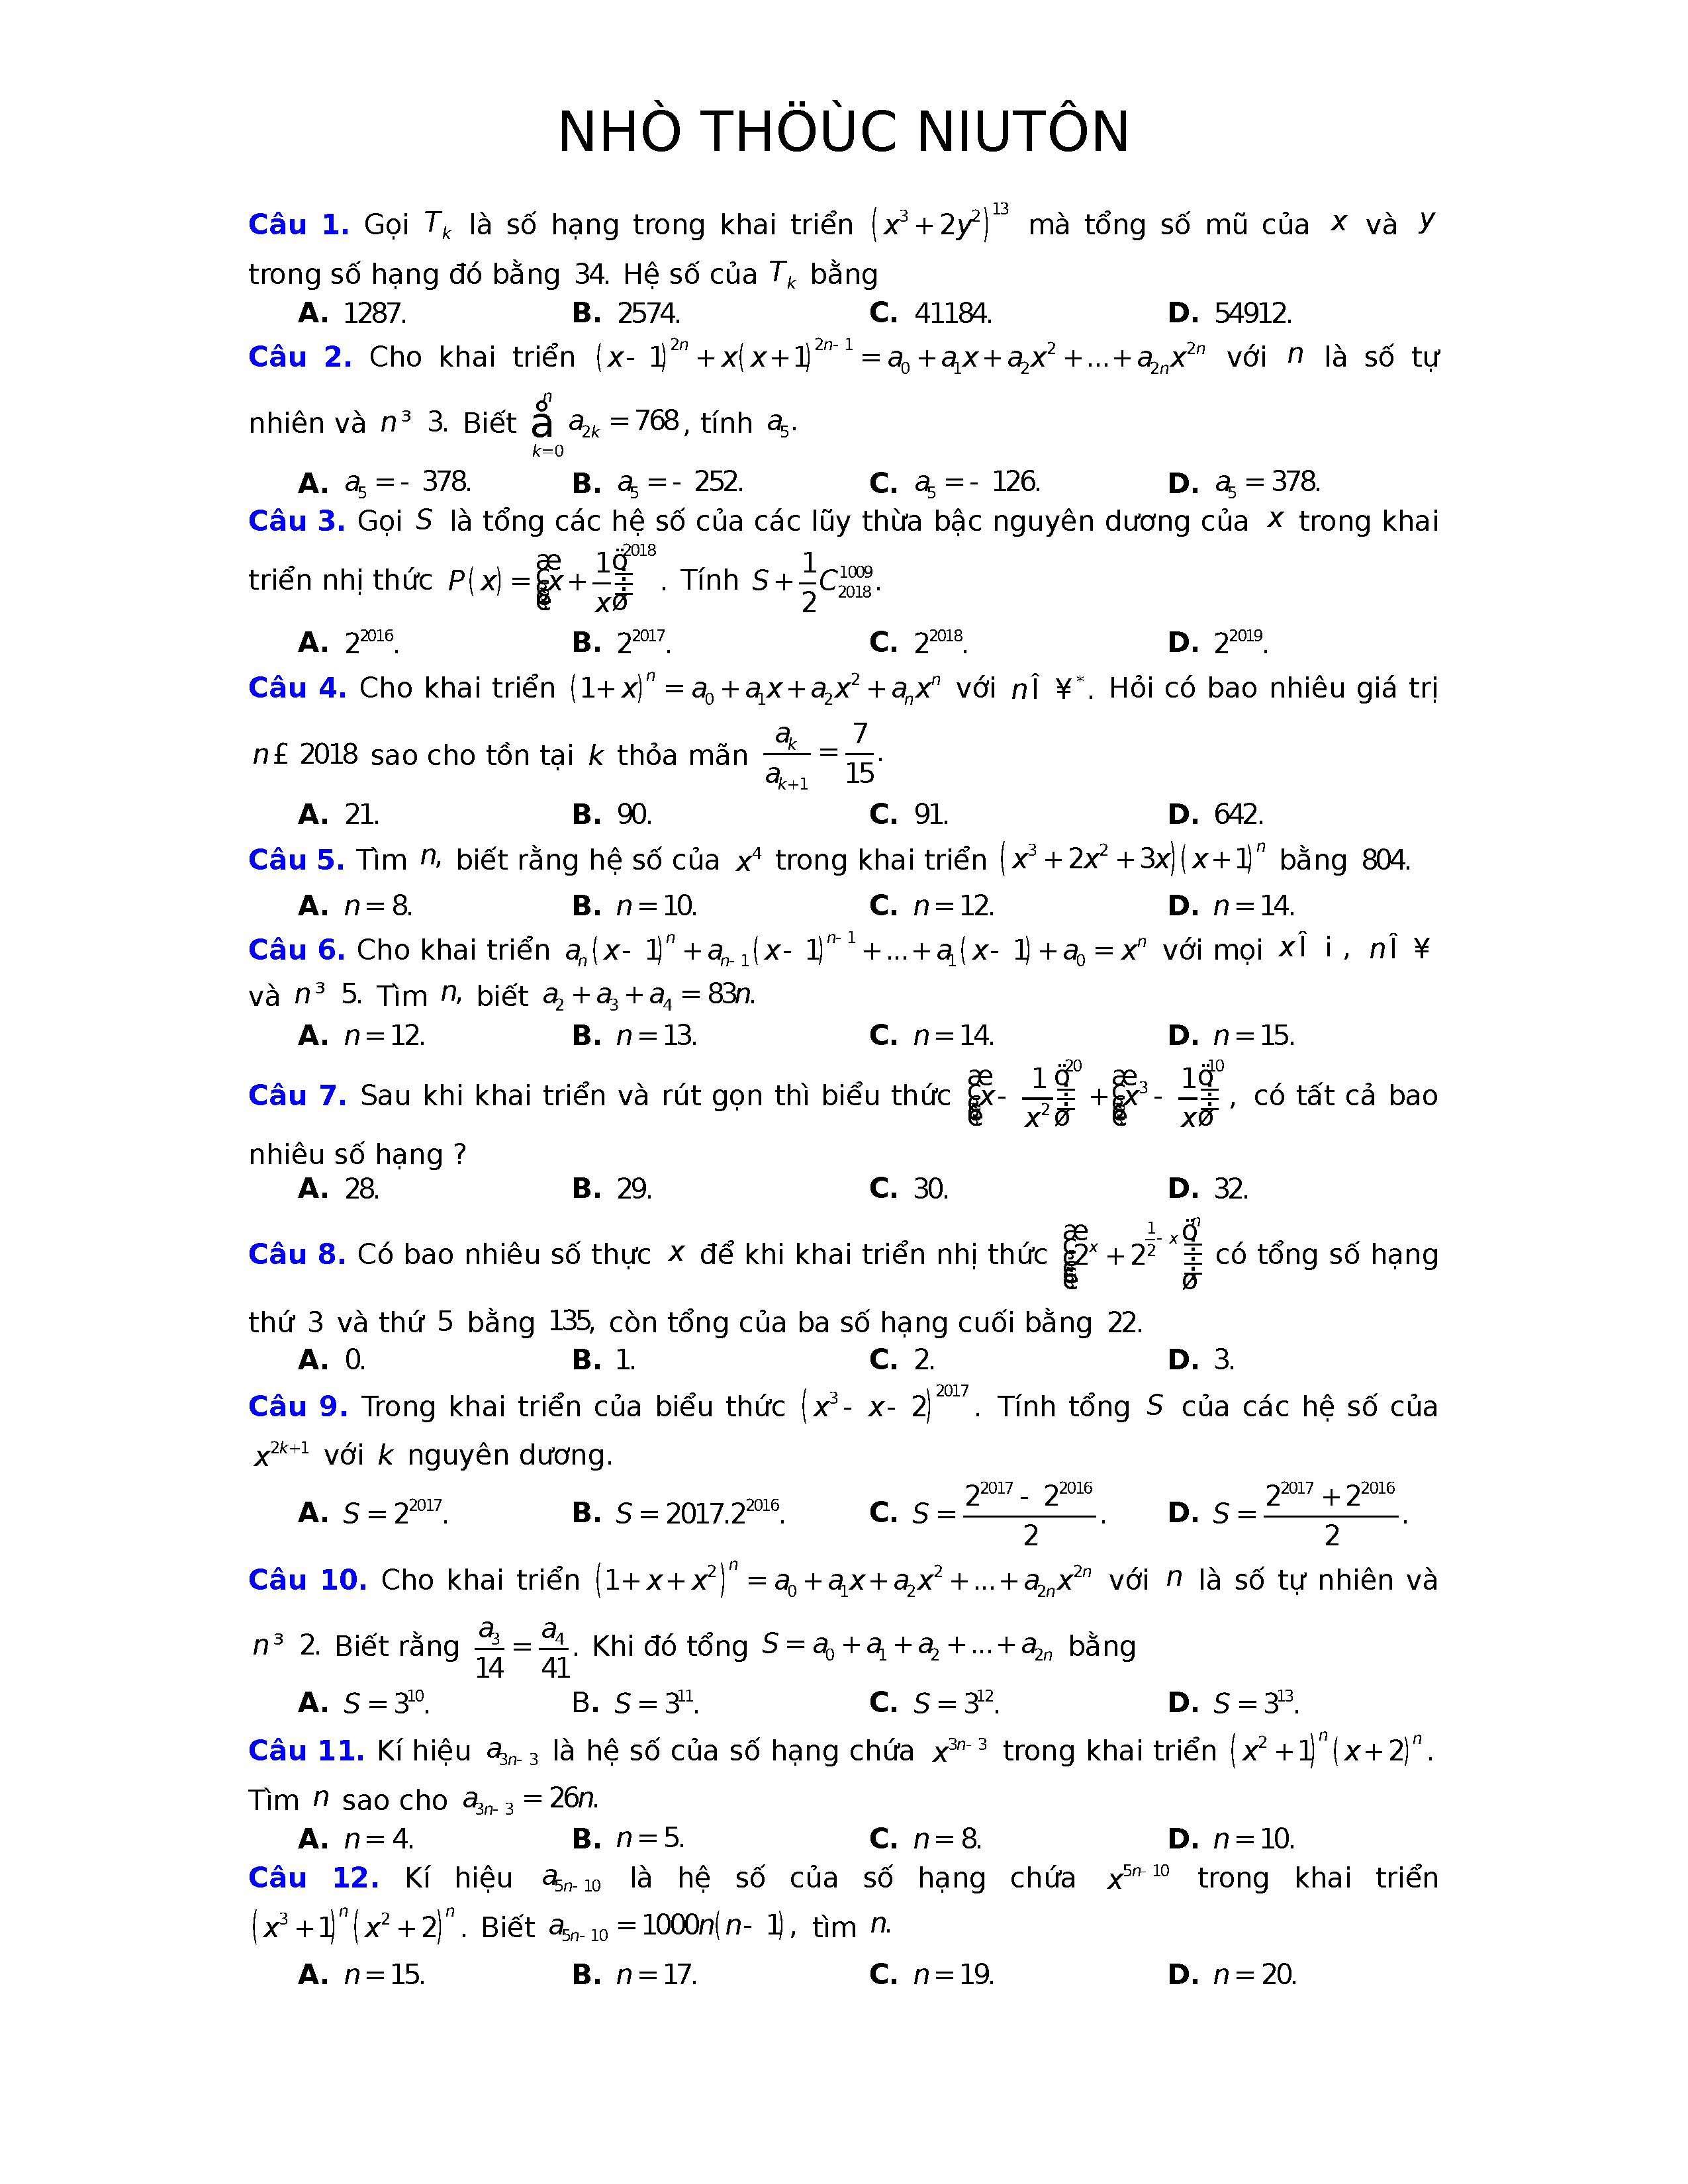 Những ví dụ về vận dụng cao của nhị thức Newton trong thực tế là gì?